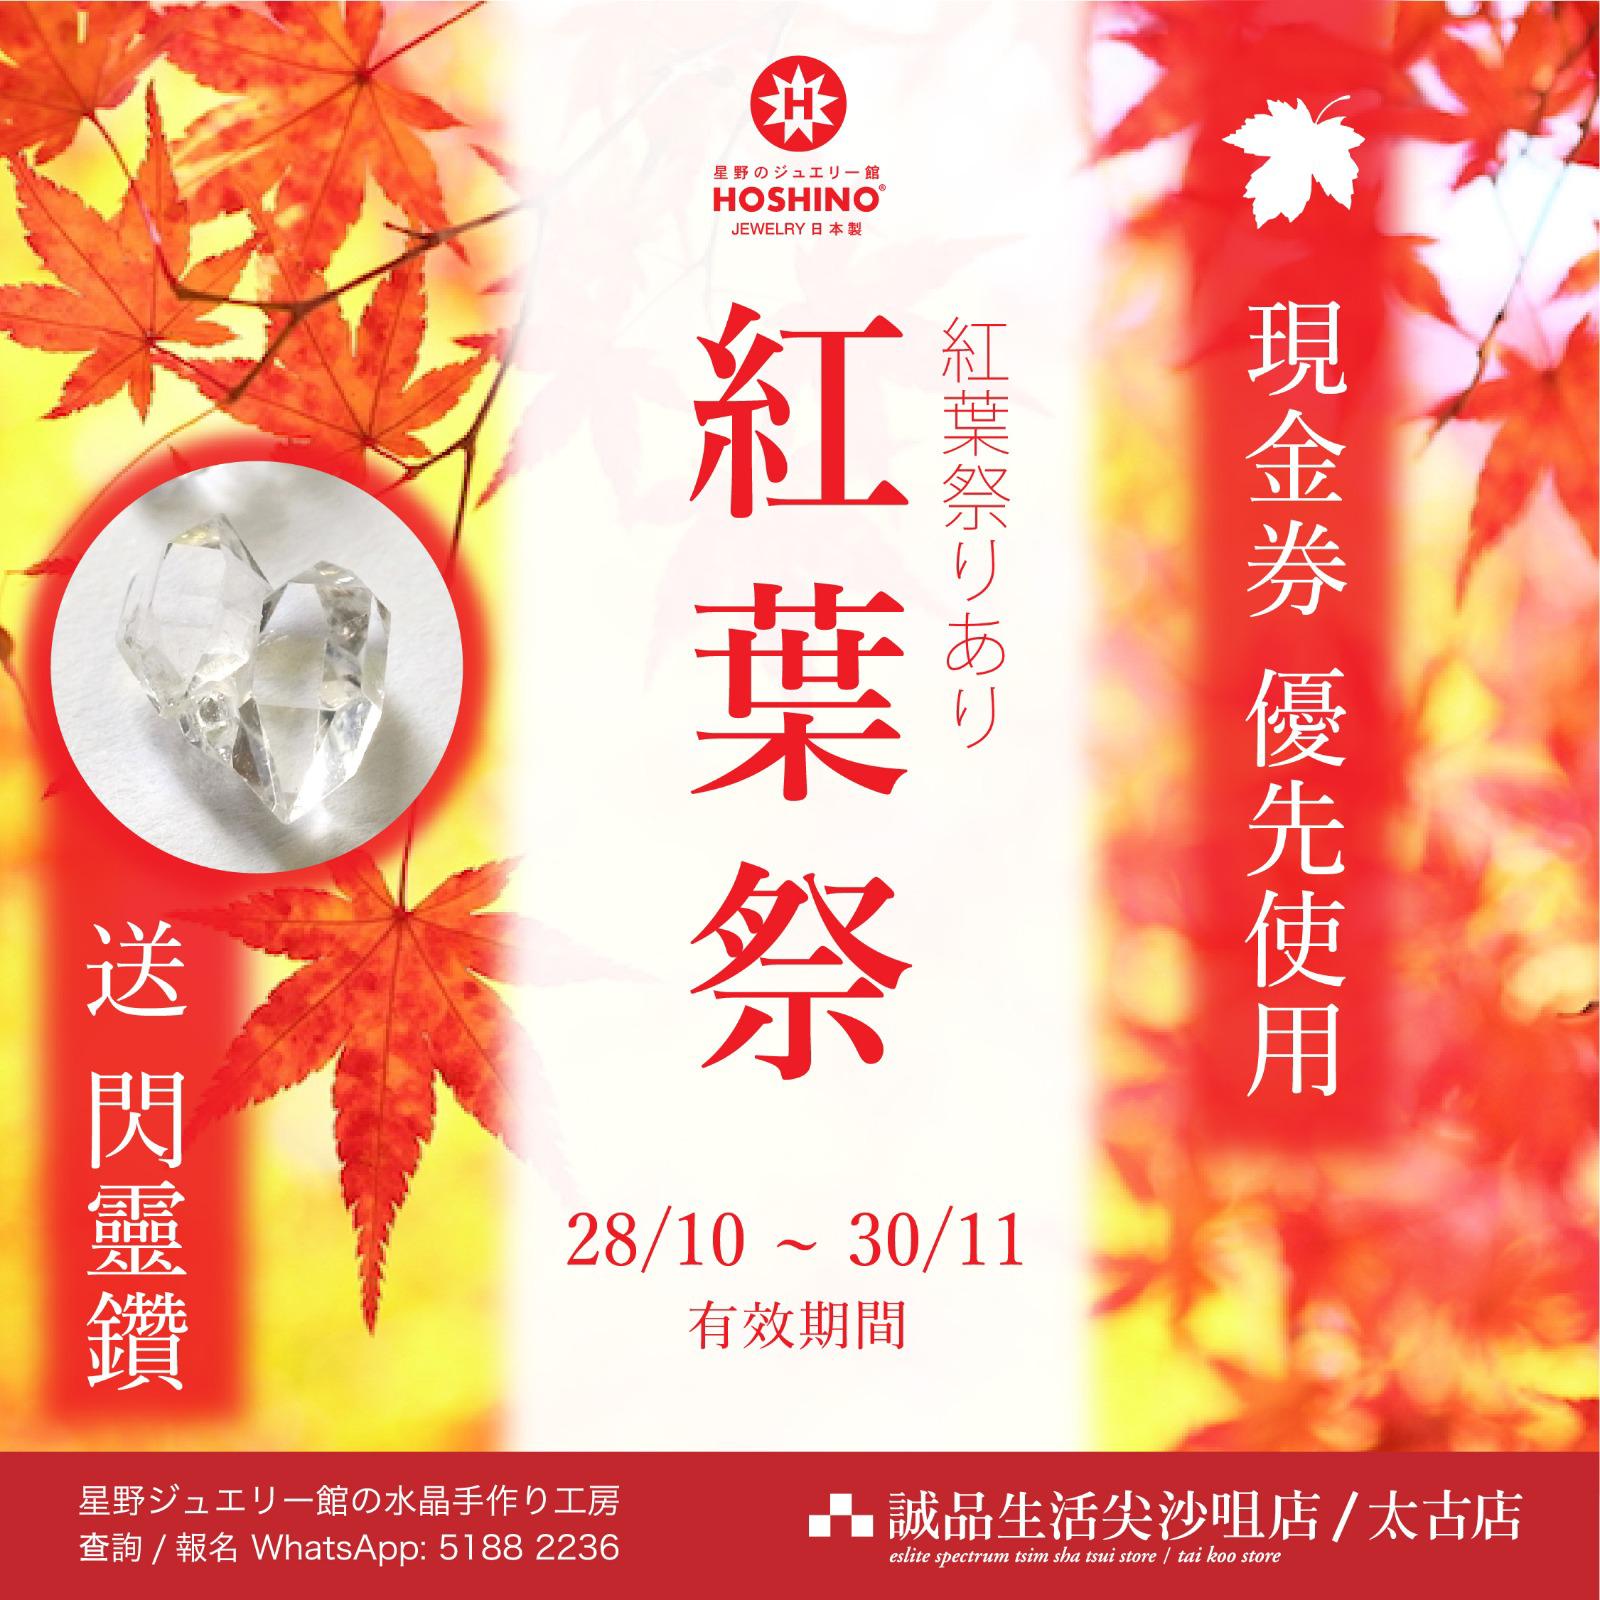 香港全店舗紅葉感謝祭の開催